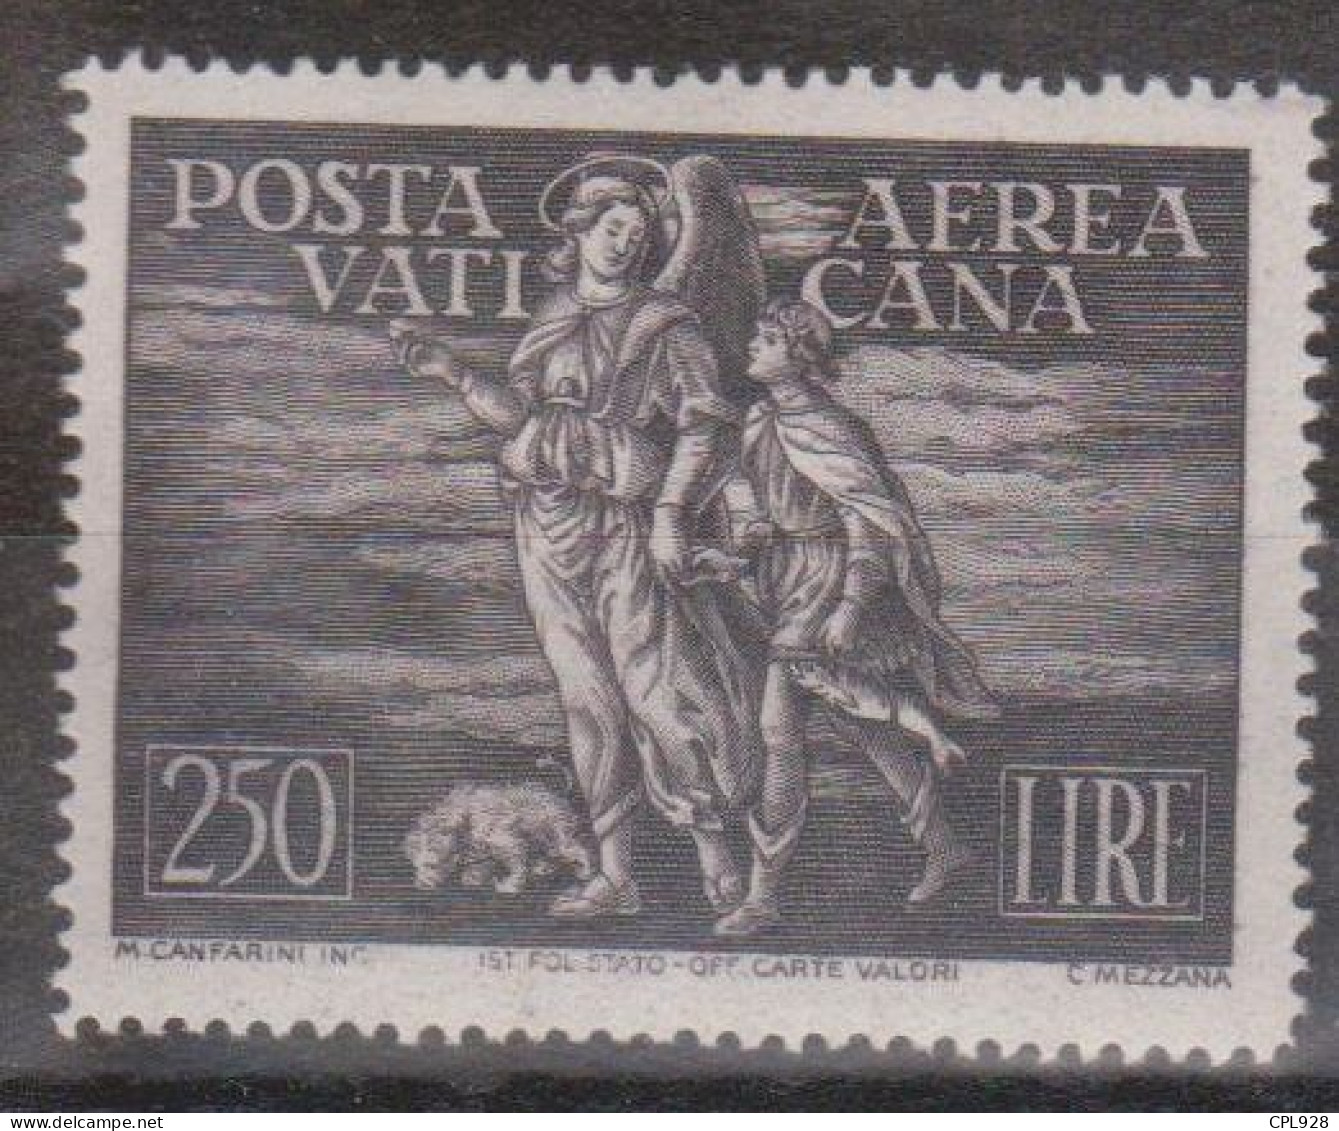 Vatican Poste Aérienne N° PA16 Avec Charnière - Airmail